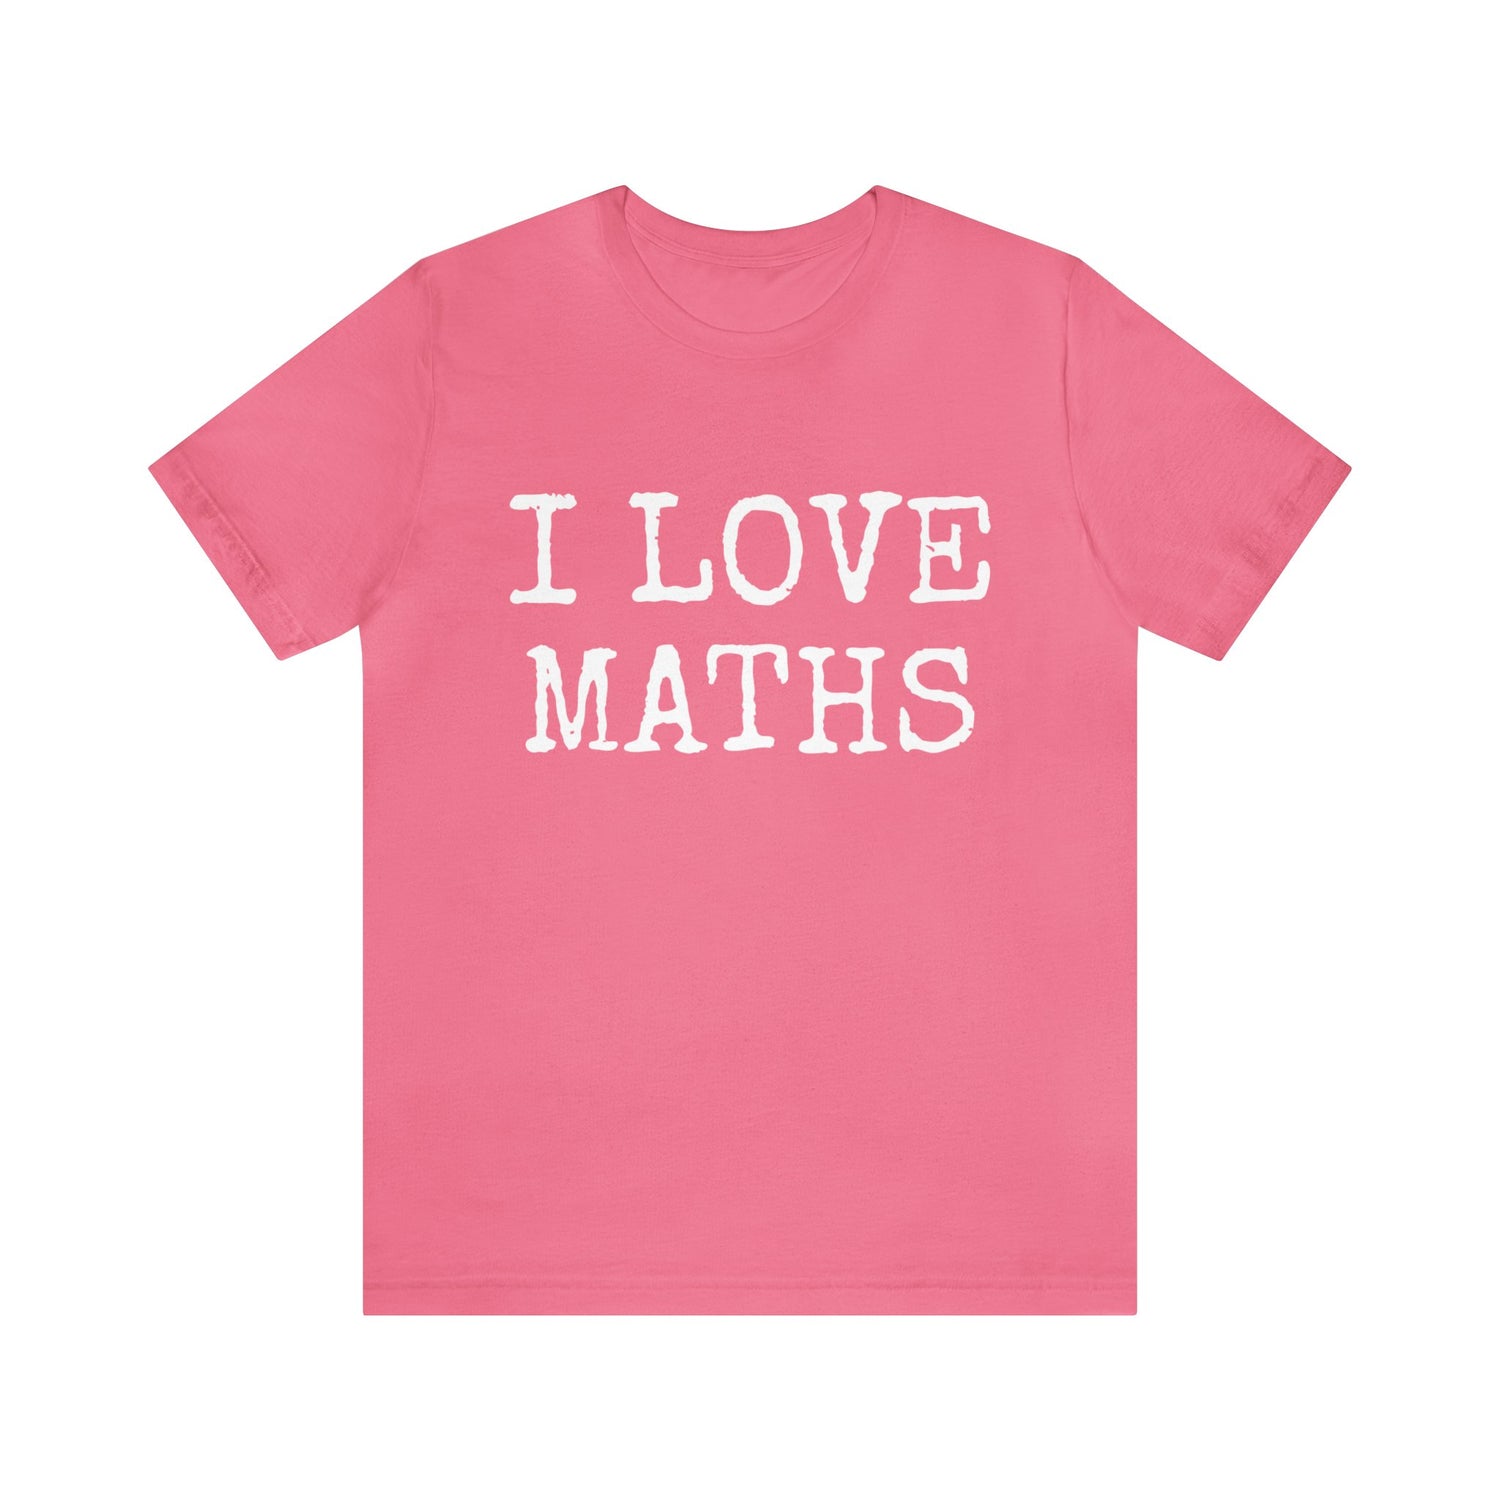 Maths Enthusiast Gift Idea | Maths T-Shirt Charity Pink T-Shirt Petrova Designs